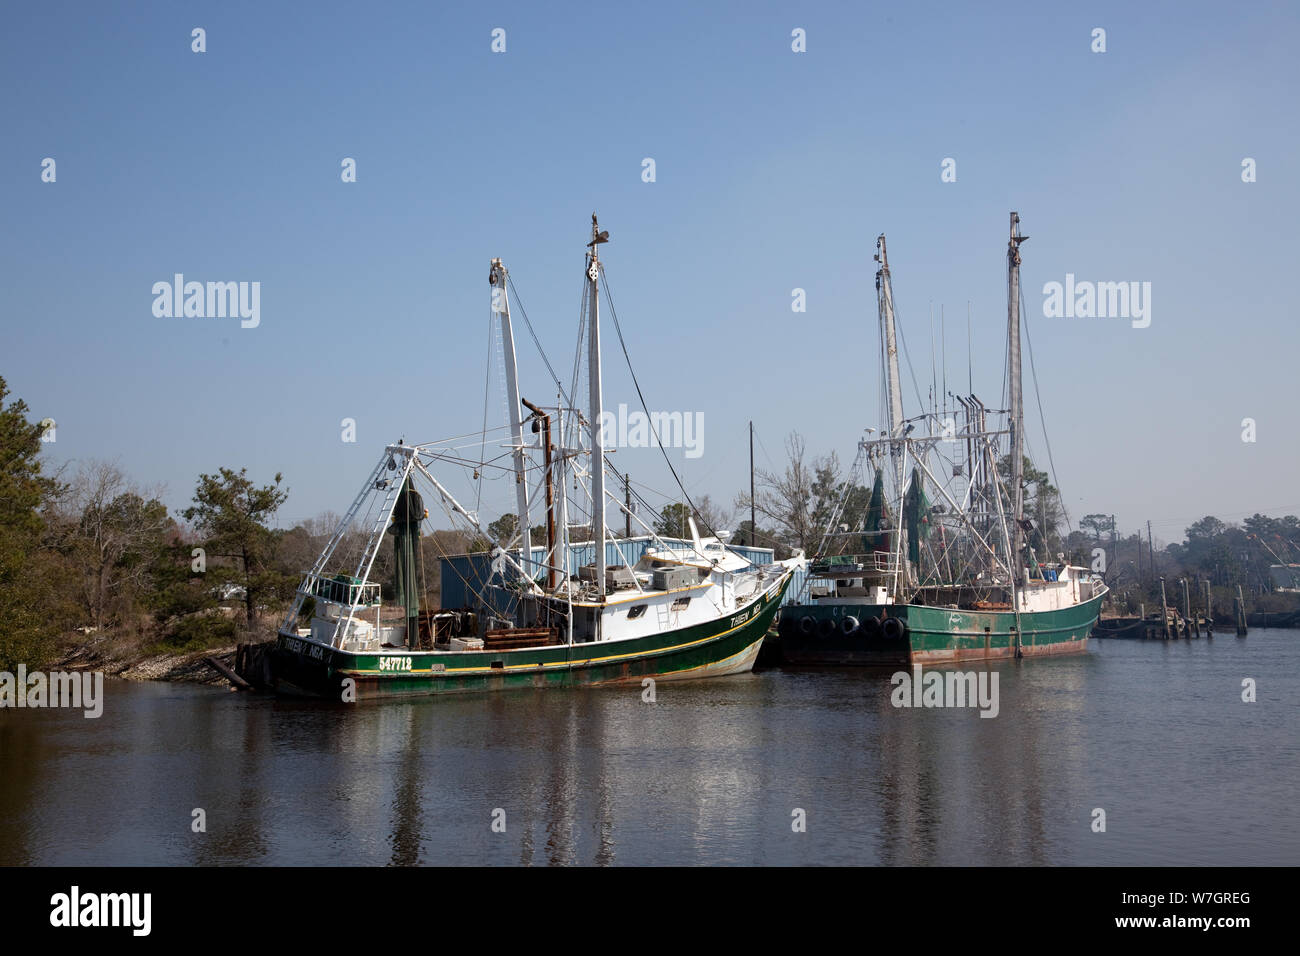 Bayou La Batre, Alabama, est un village de pêcheurs avec un port de transformation des fruits de mer pour les bateaux de pêche et bateaux de crevettes Banque D'Images